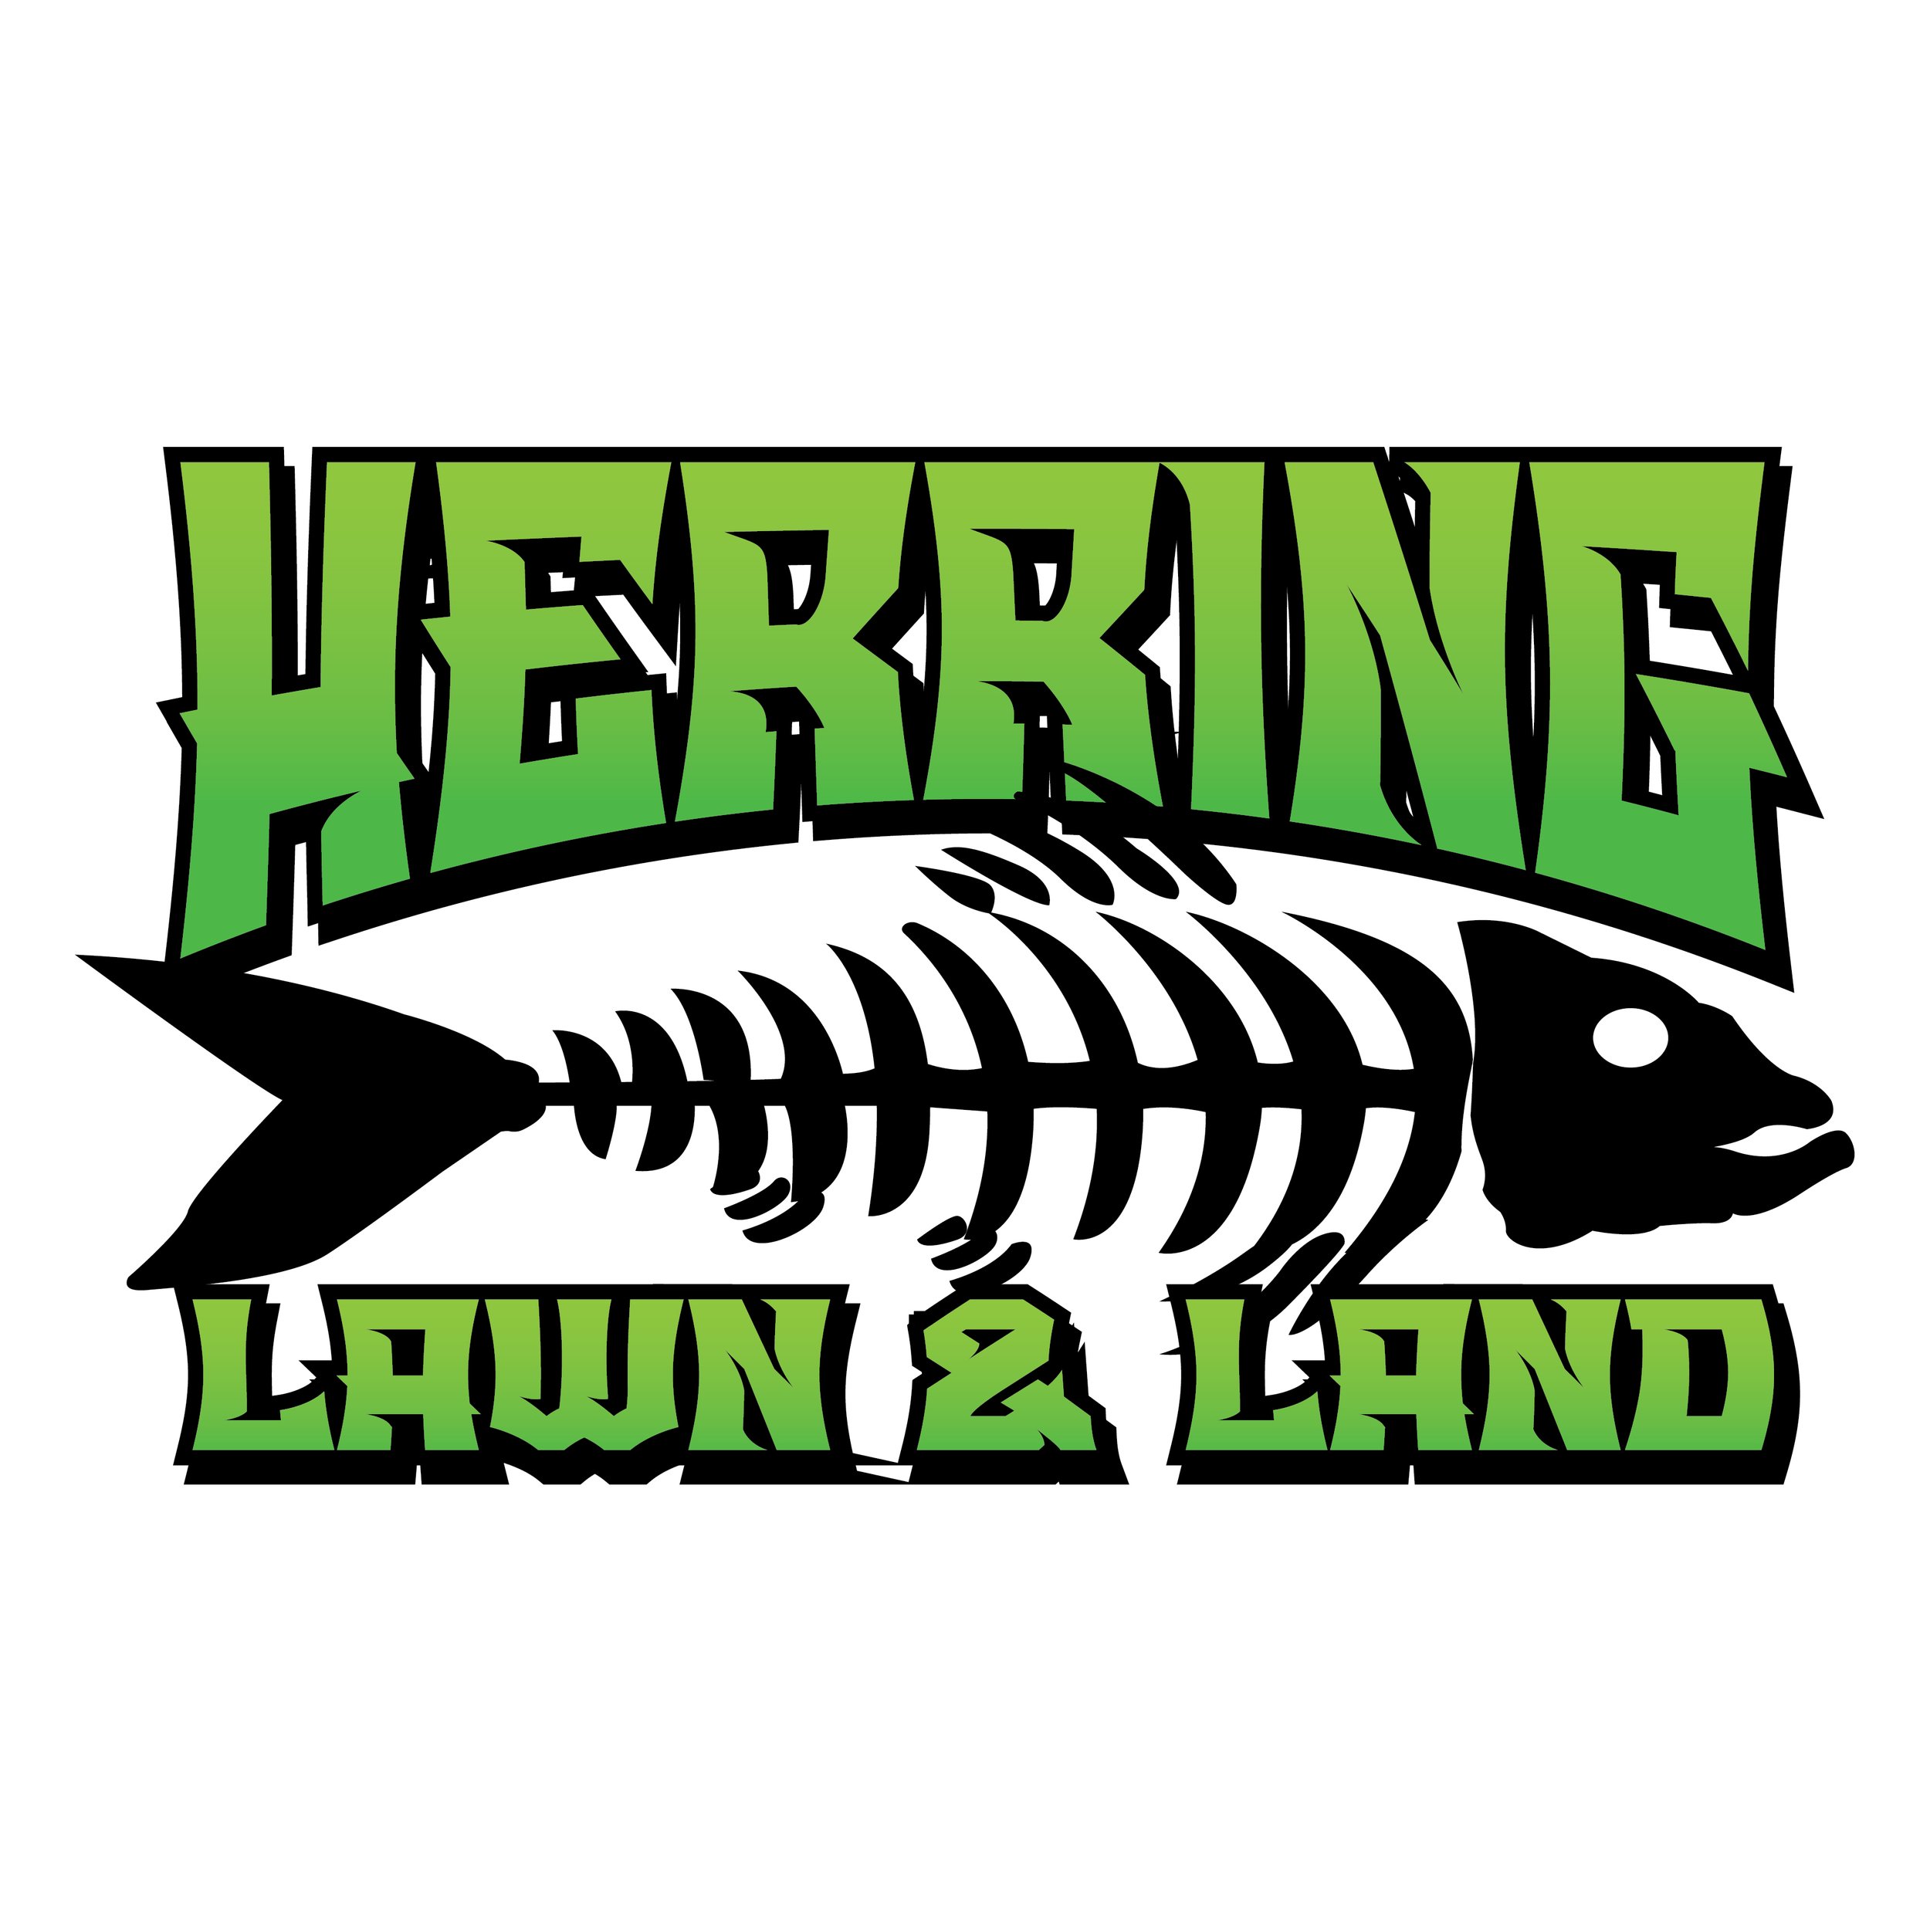 Herring Lawn & Land Logo.jpg